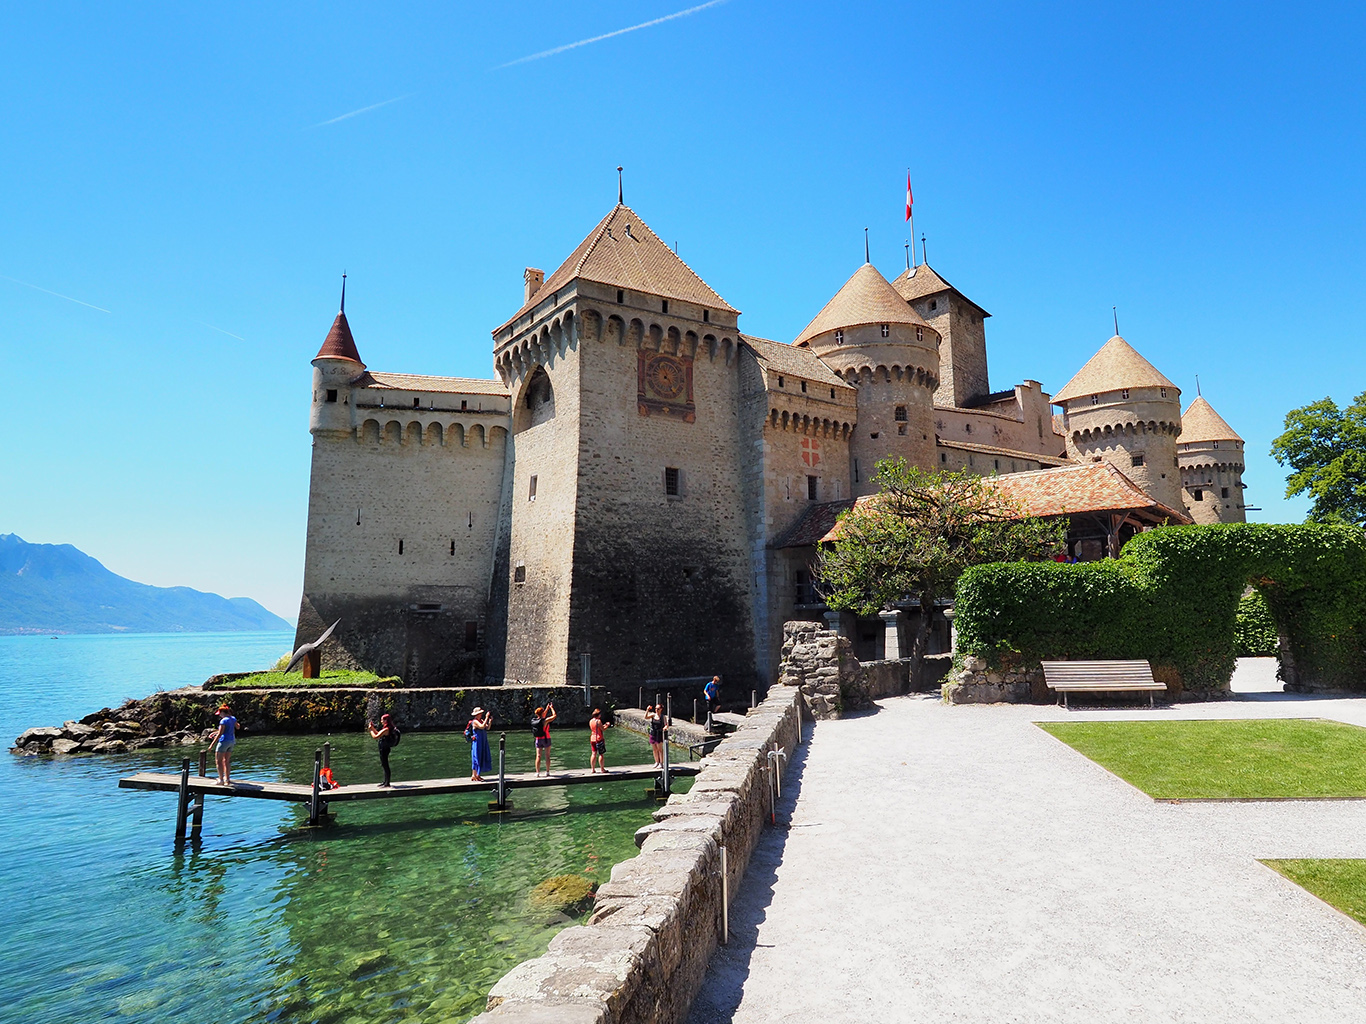 Opevněný hrad Chillon na břehu Ženevského jezera